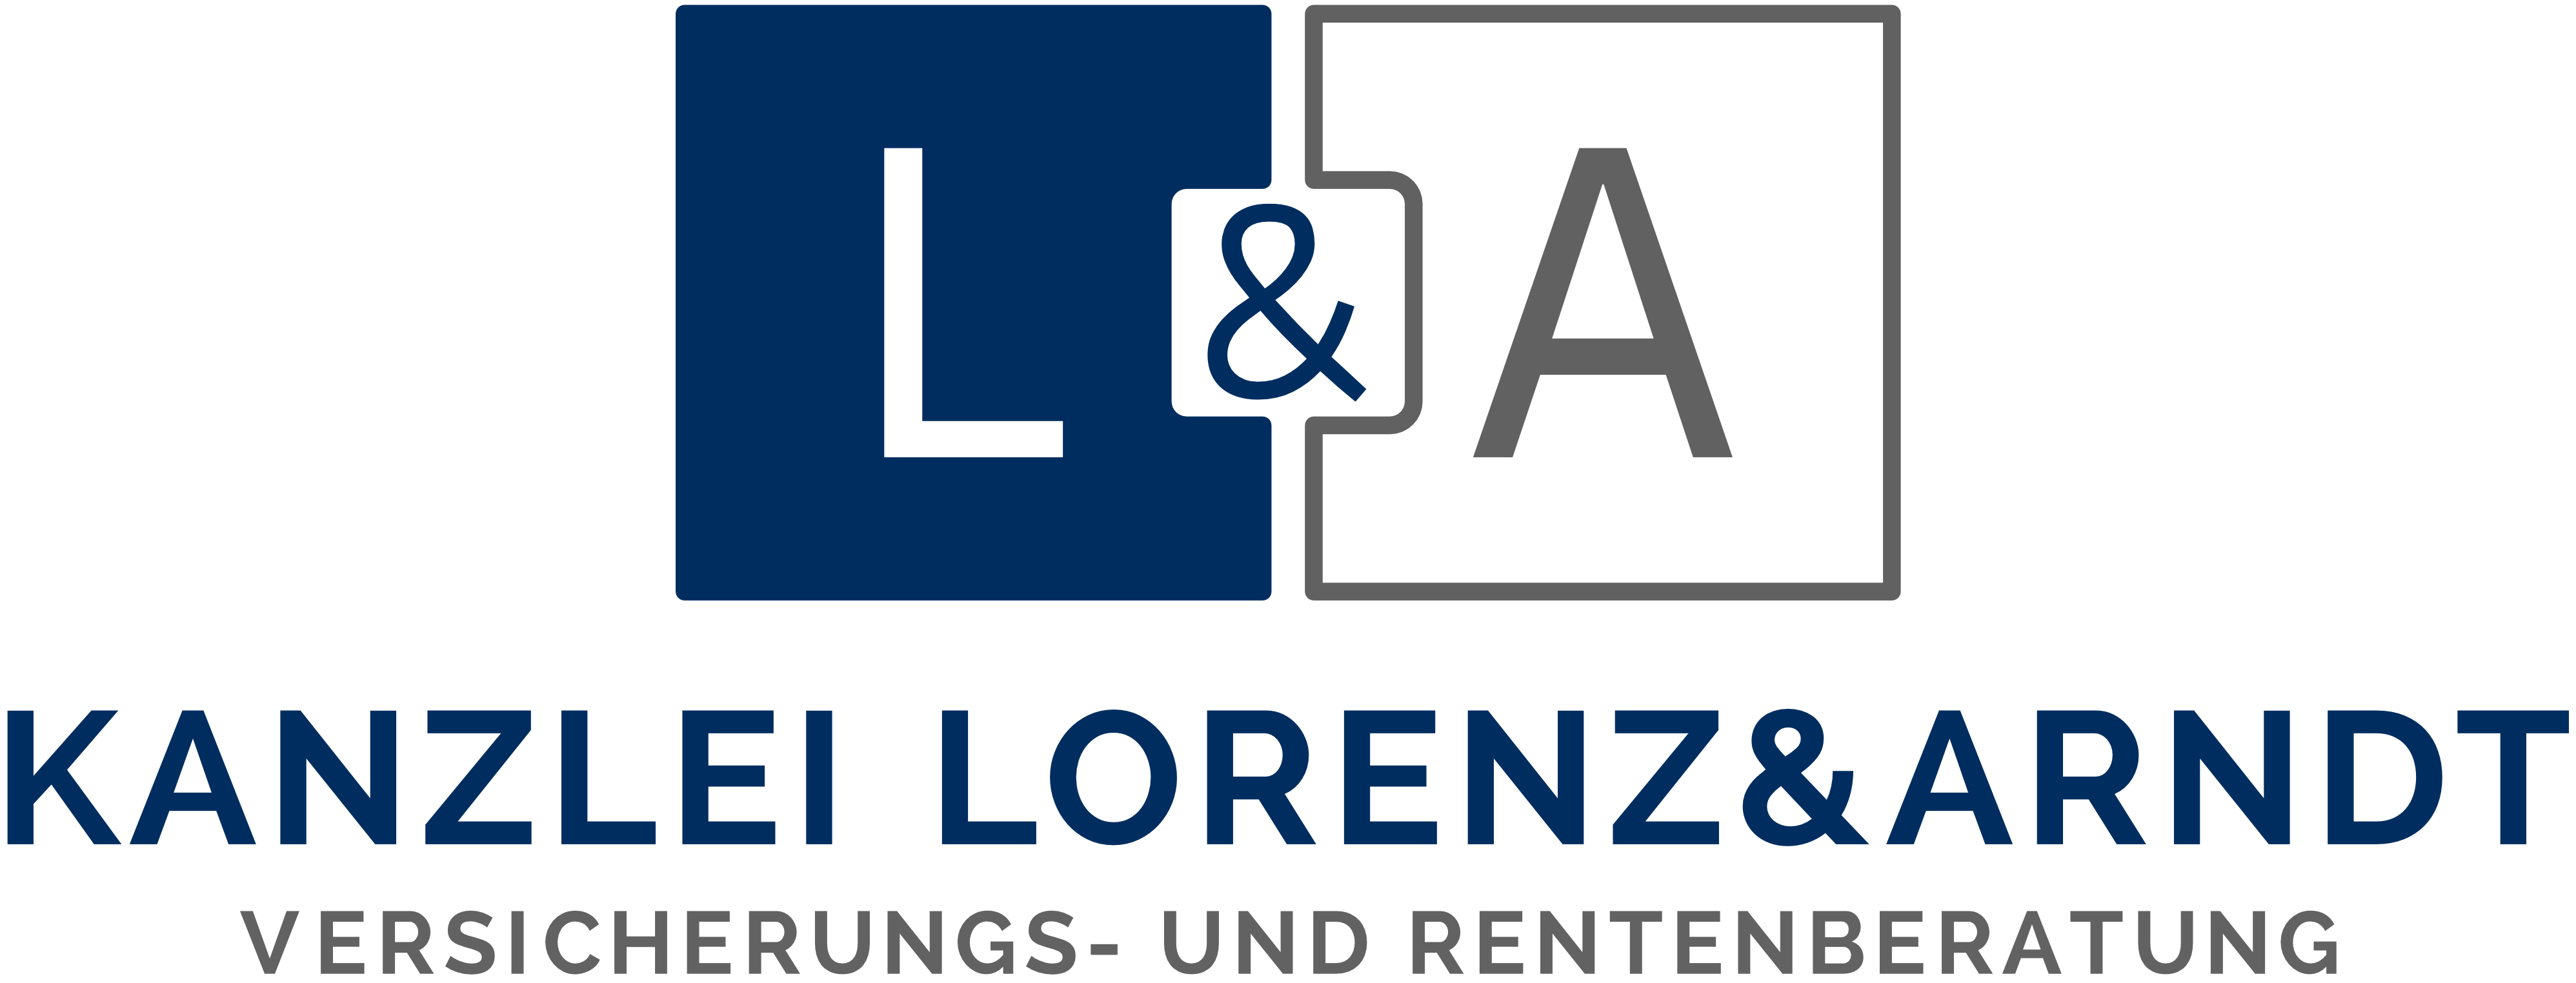 Kanzlei Lorenz & Arndt